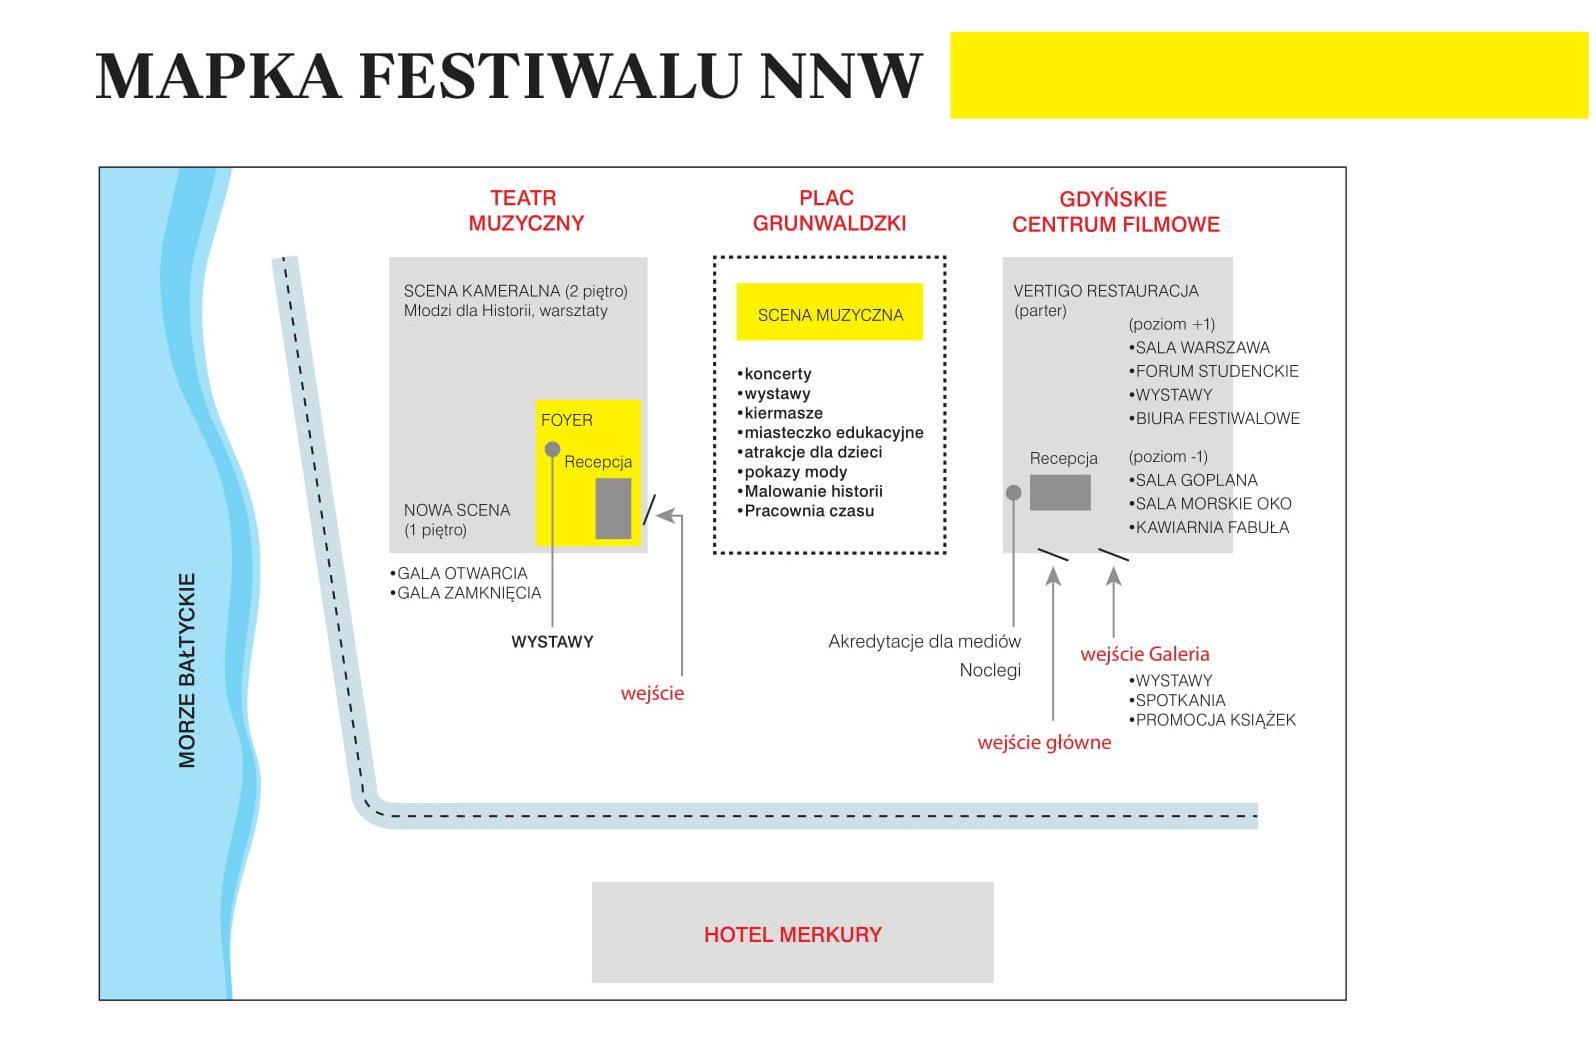  Wszystkie wydarzenia X Festiwalu Filmowego „Niepokorni Niezłomni Wyklęci” odbędą się w Teatrze Muzycznym, na Placu Grunwaldzkim i Gdyńskim Centrum Filmowym.